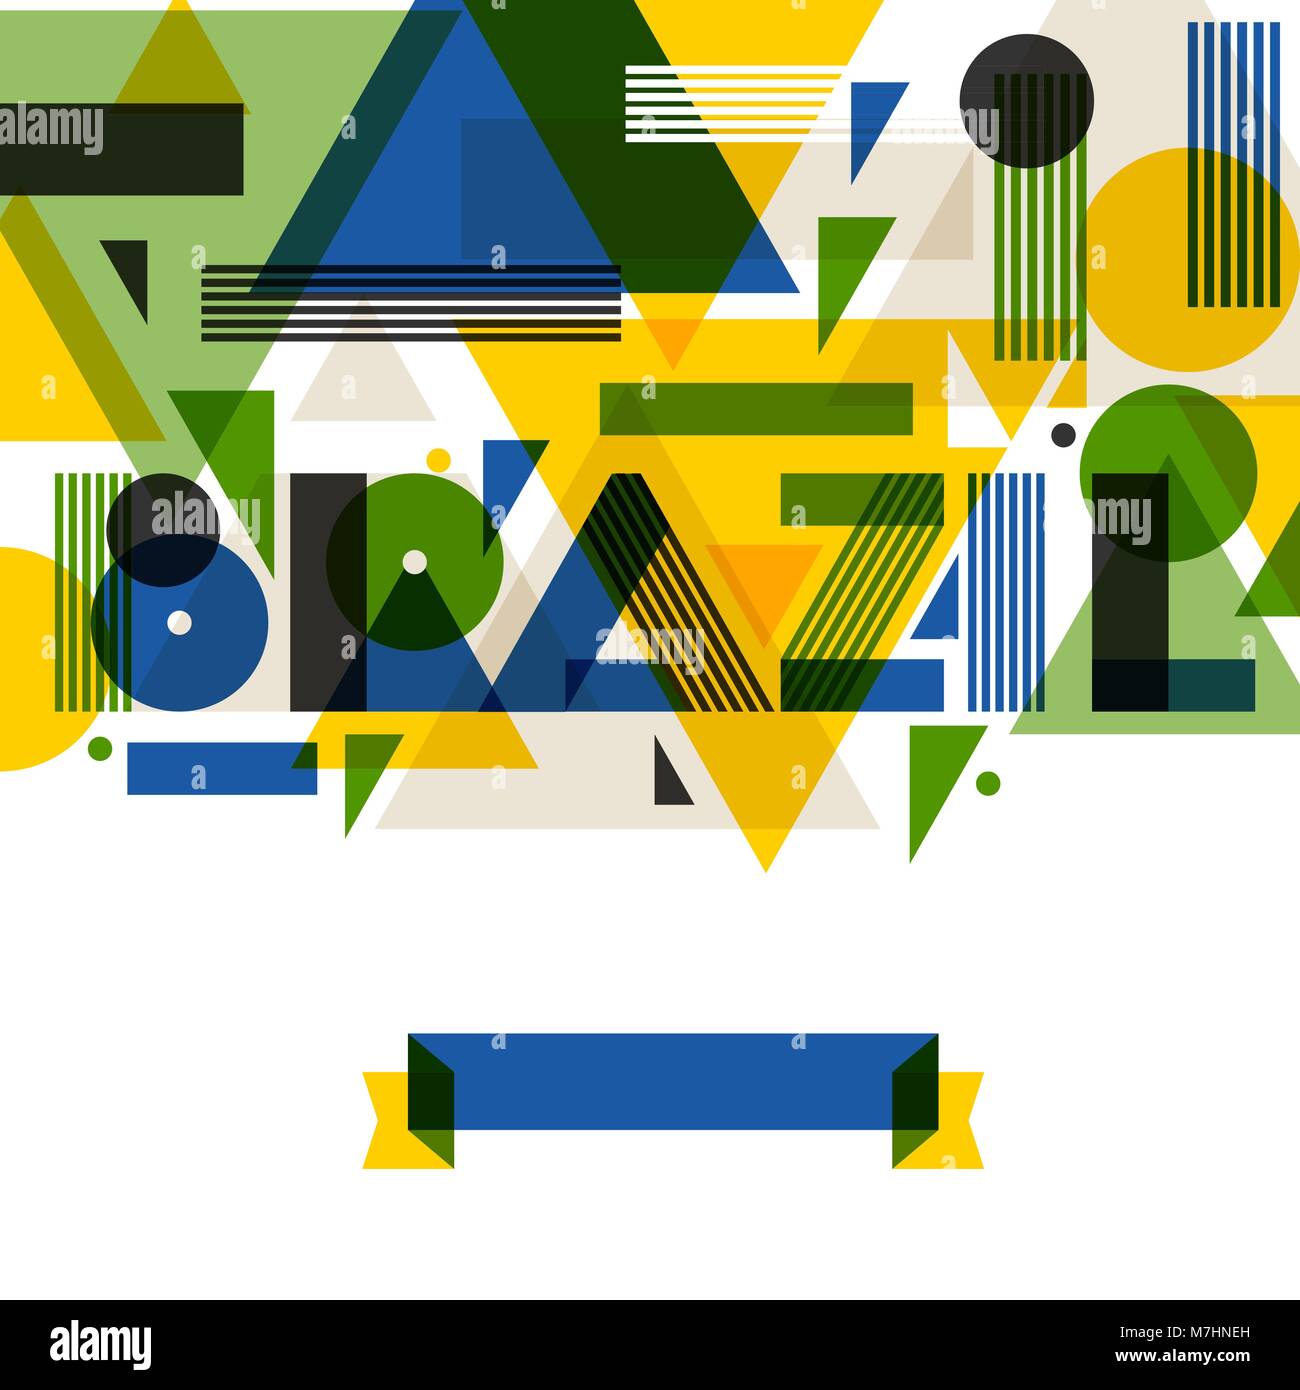 Sfondo con il Brasile in astratto stile geometrico. Design per copertine, depliant turistico, banner pubblicitario Illustrazione Vettoriale